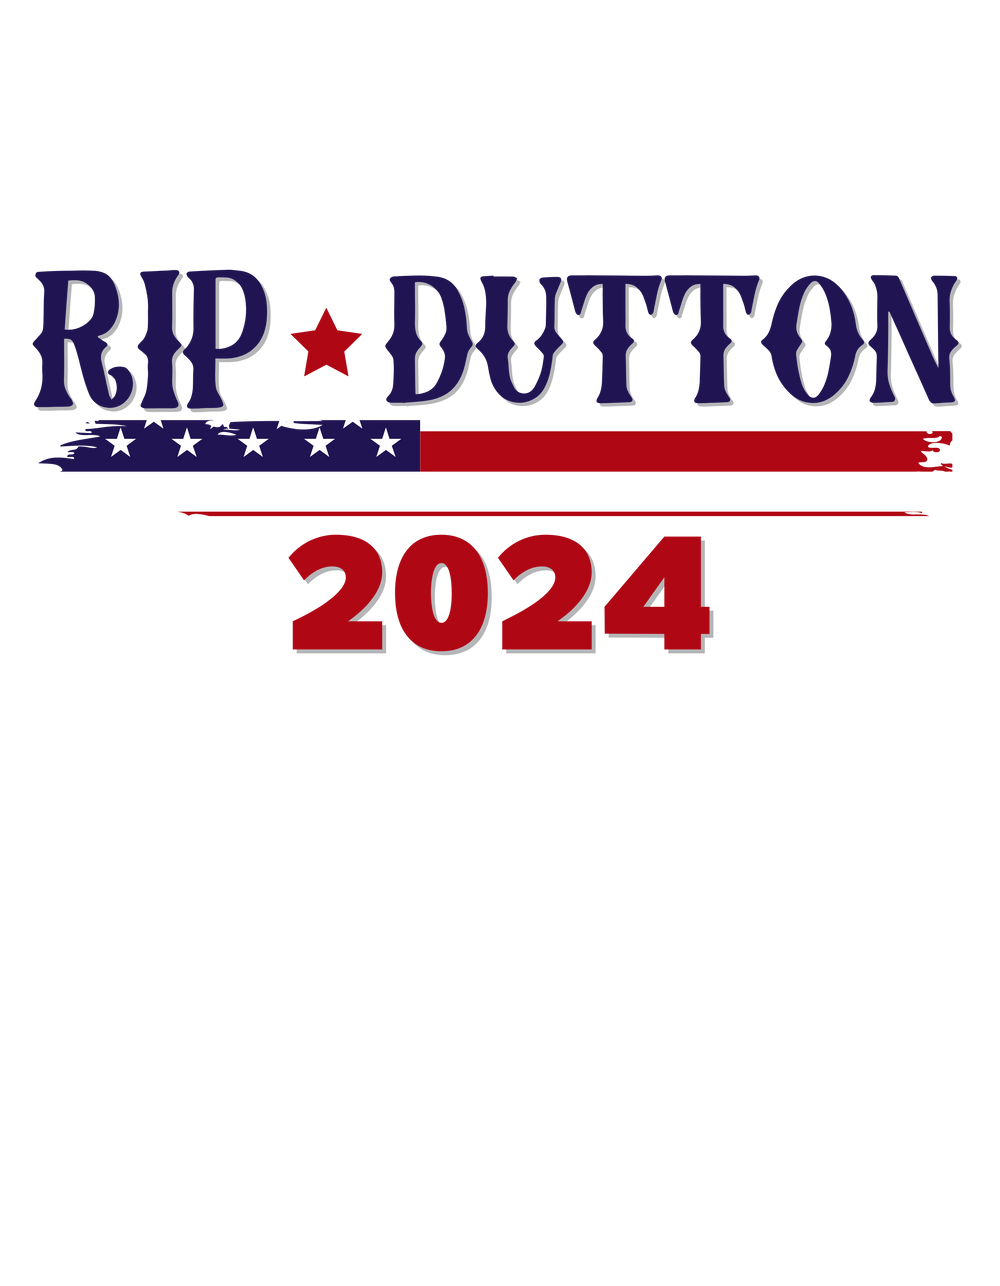 Rip Dutton 2024 Tee